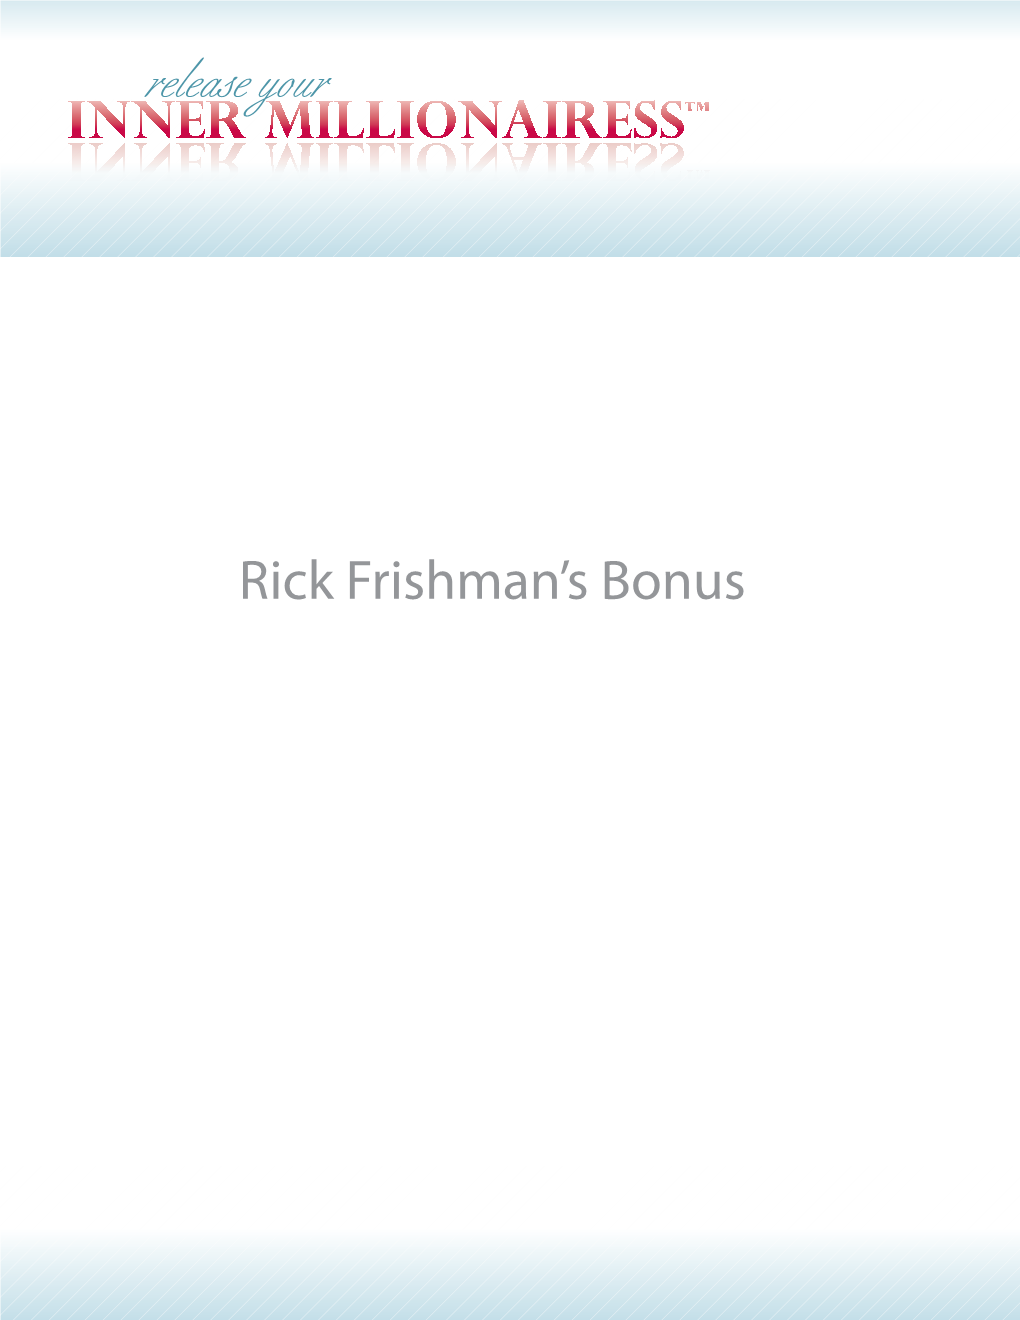 Rick Frishman's Bonus